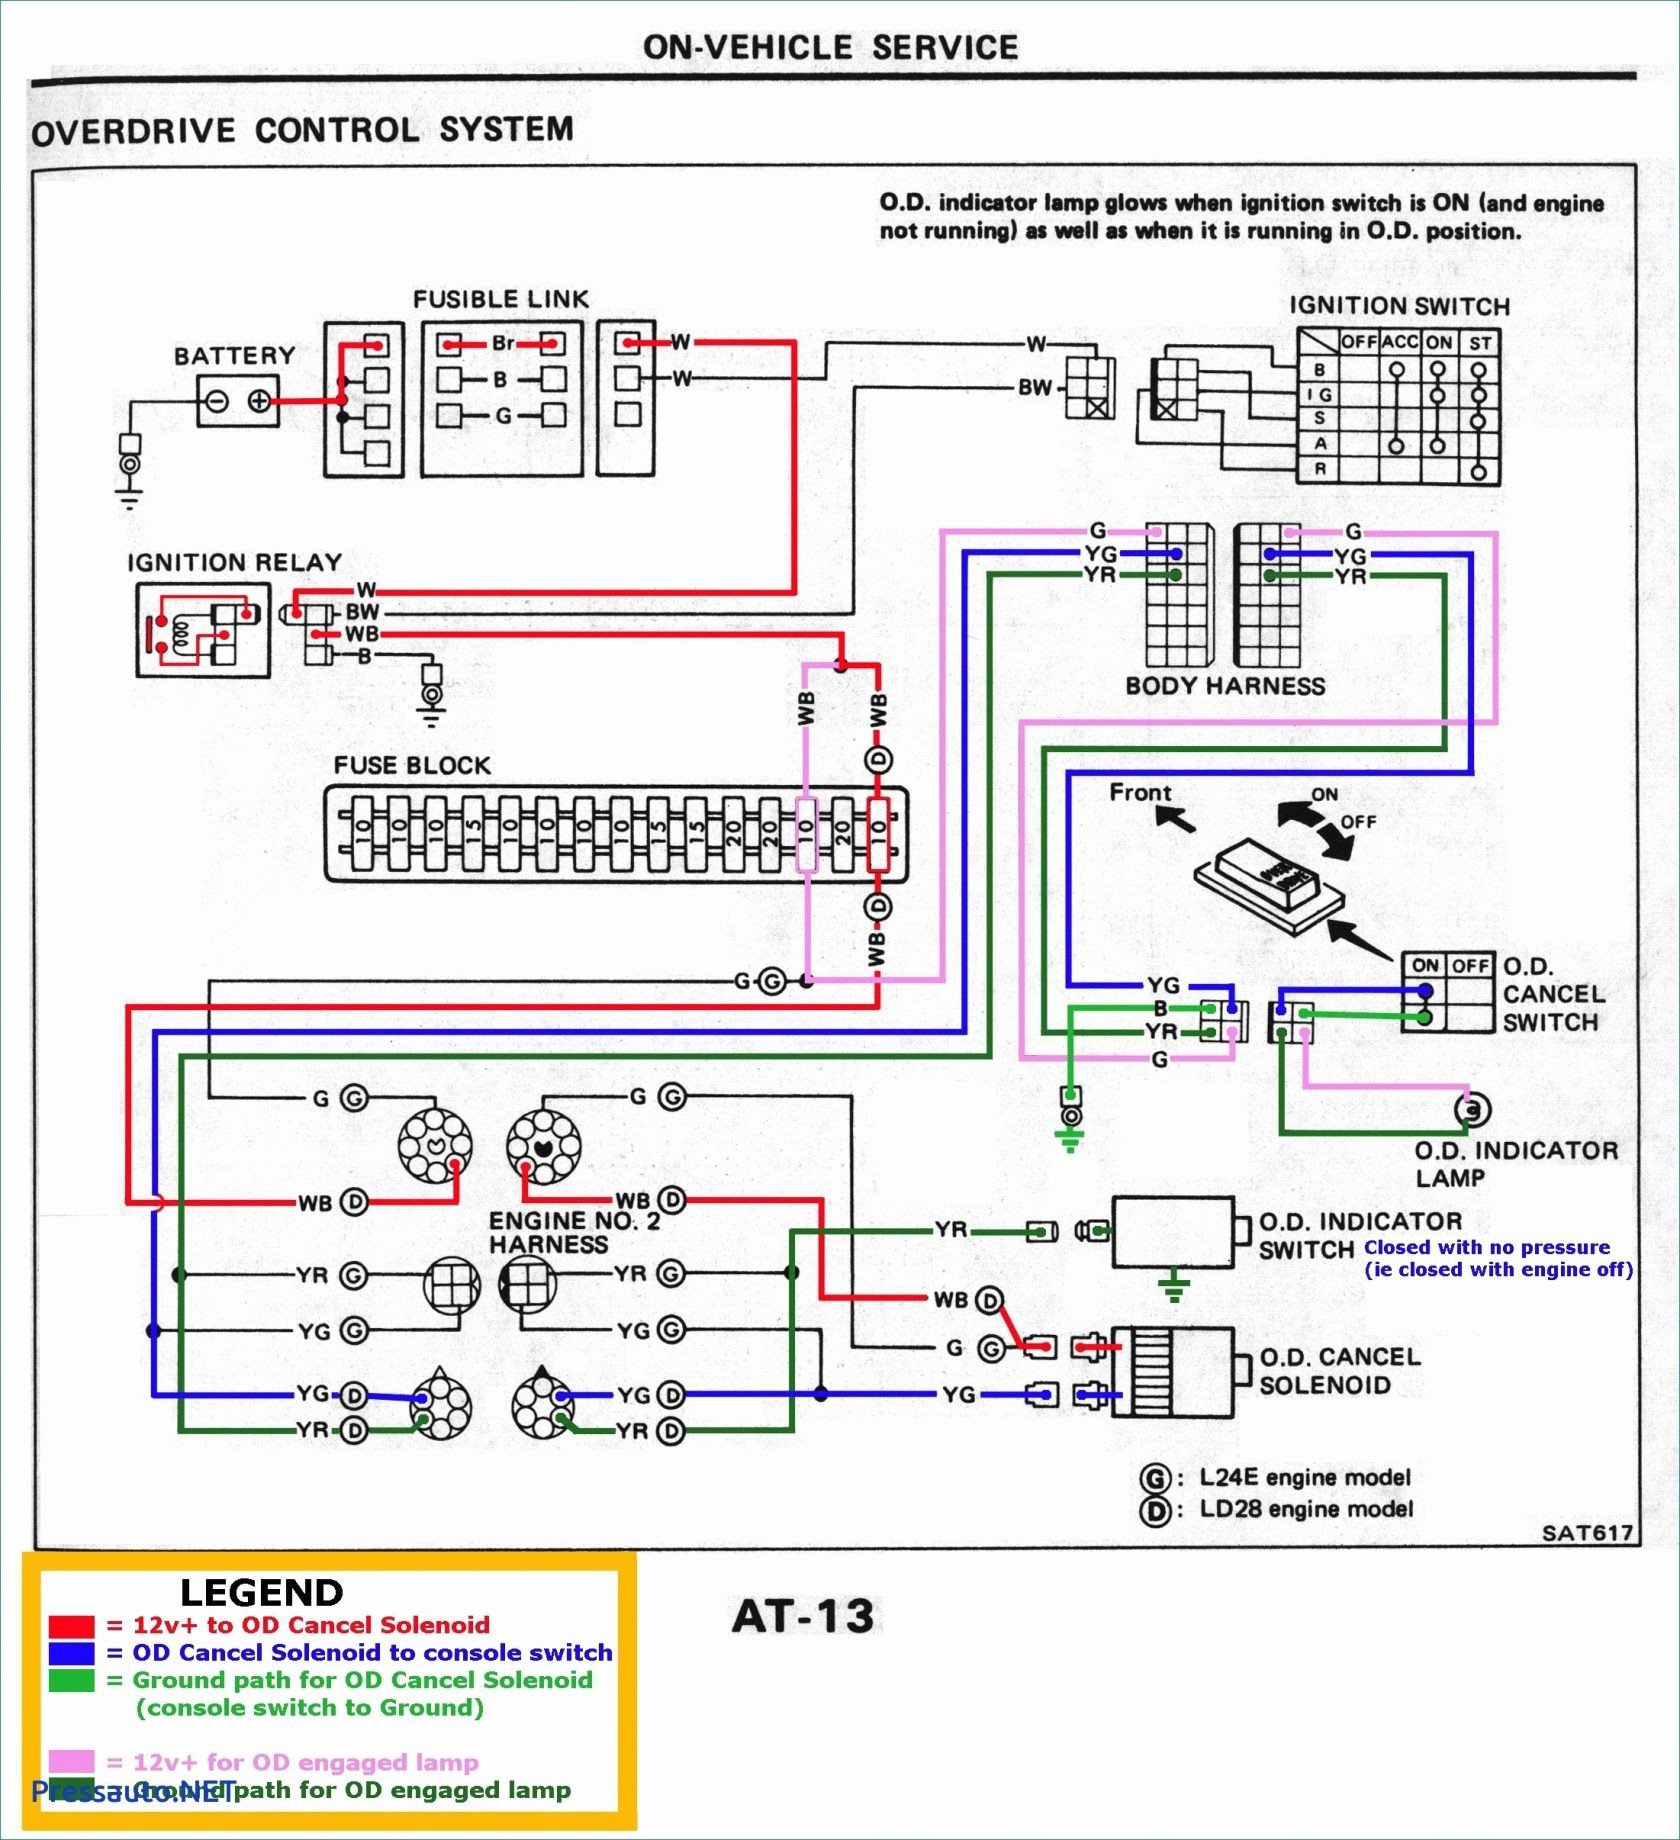 Wiring Diagram for Yardman Riding Mower Refrence Wiring Diagram